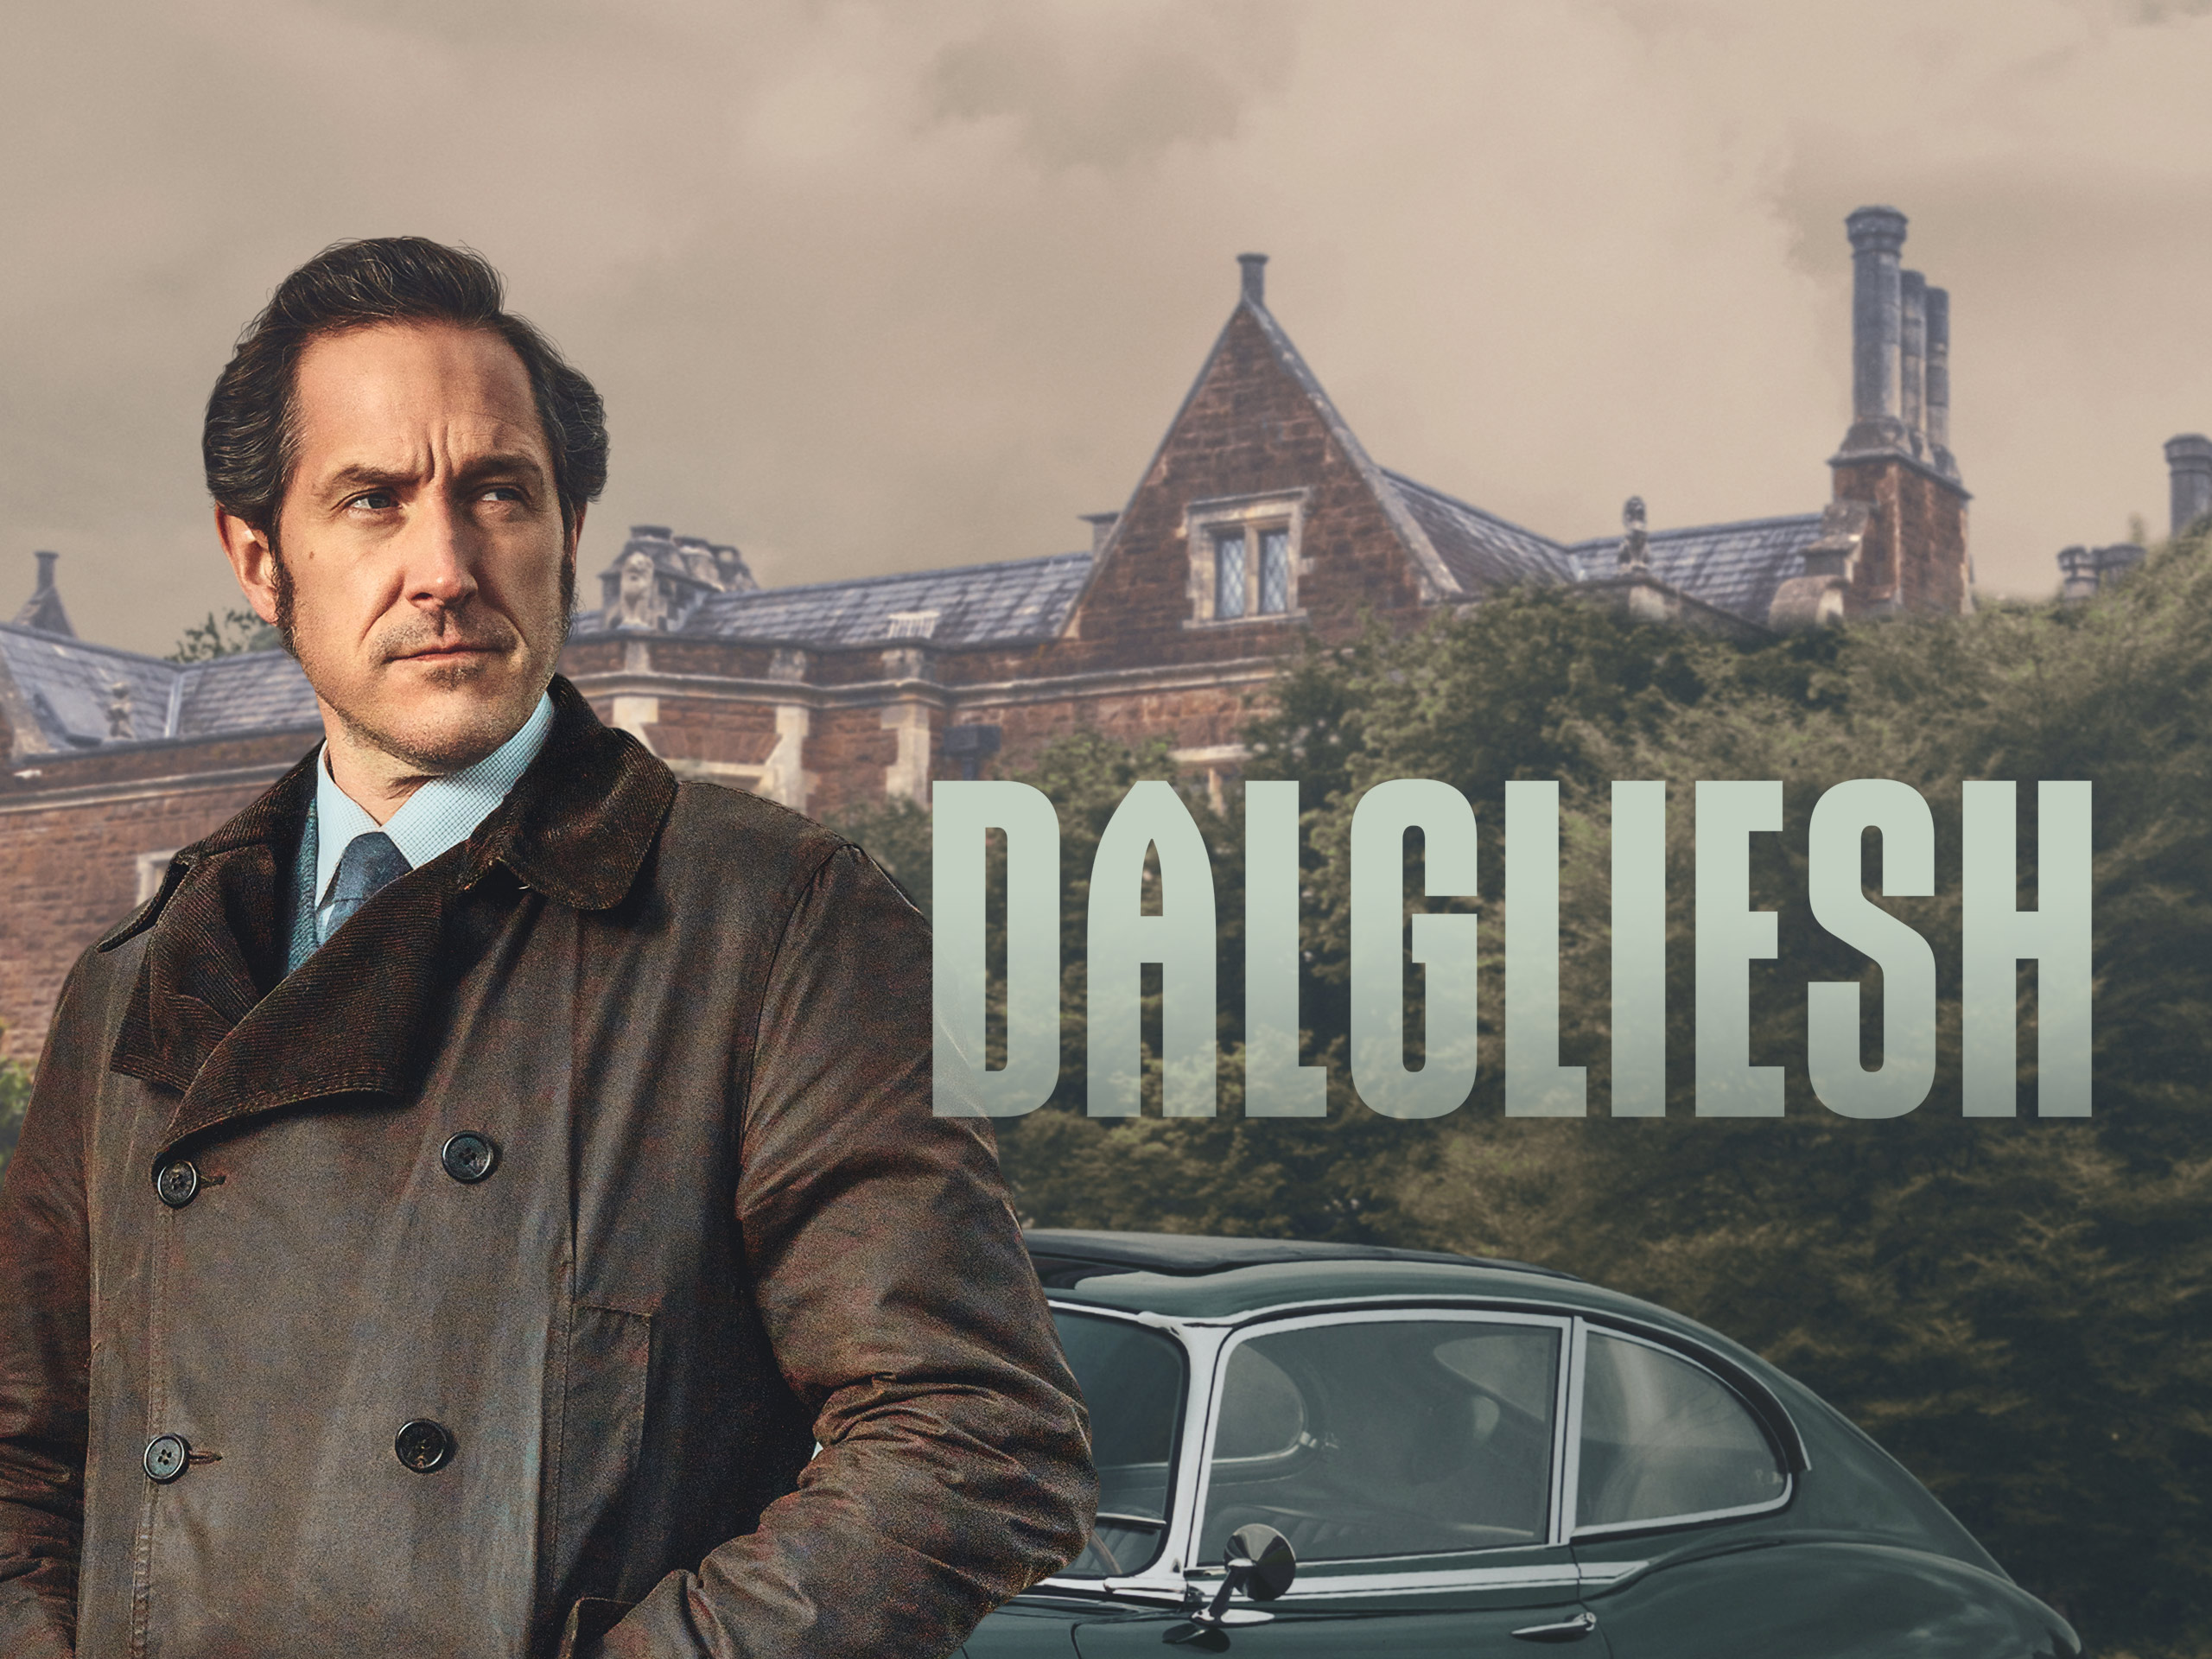 Serie tv Dalgliesh, stagione 2:  le anticipazioni della serie tratta dai libri di P.D. James